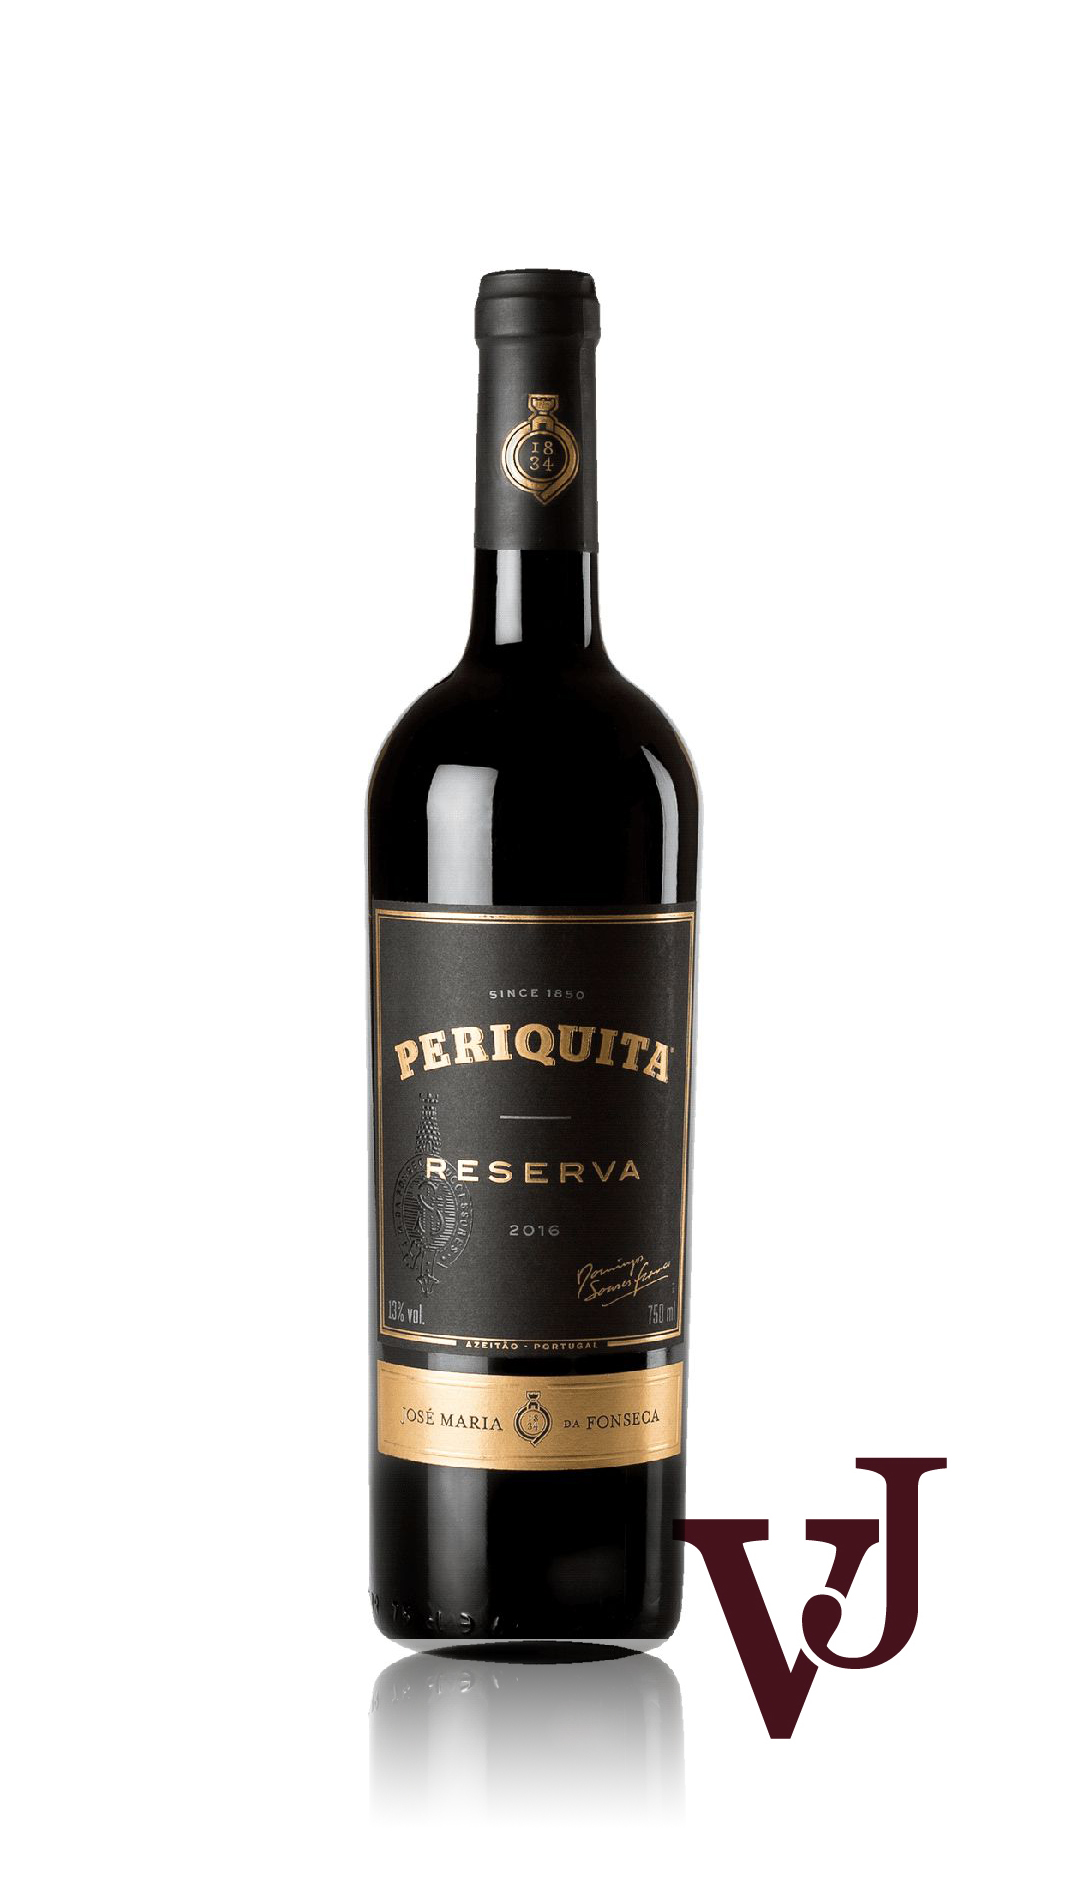 Rött Vin - Periquita Reserva artikel nummer 256001 från producenten José Maria da Fonseca från området Portugal